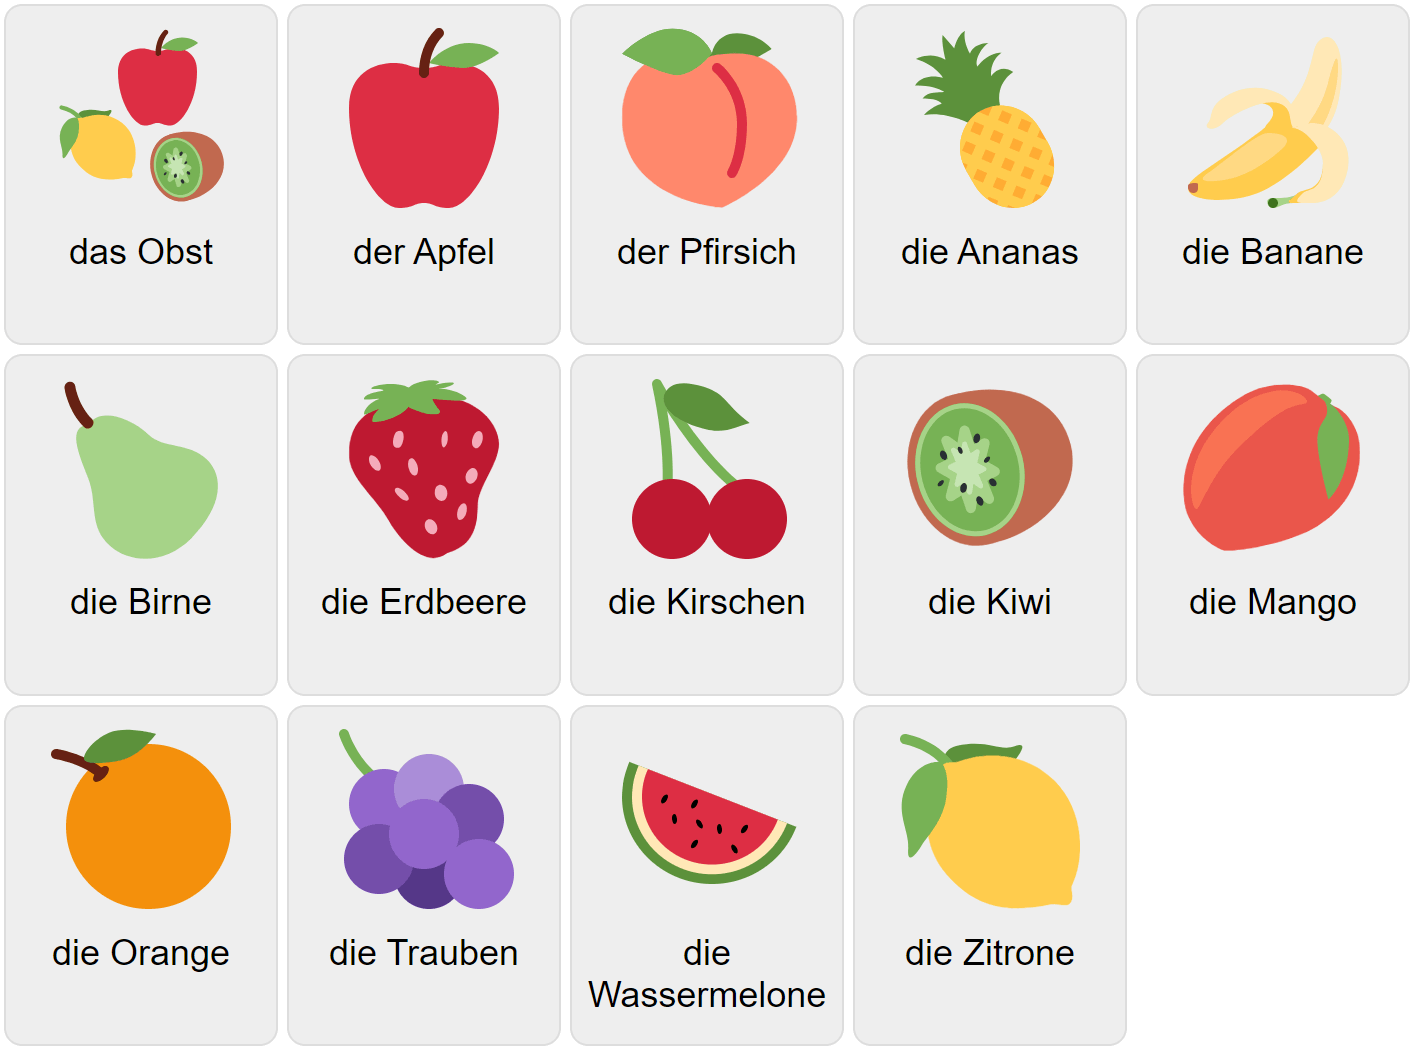 Fruits in German